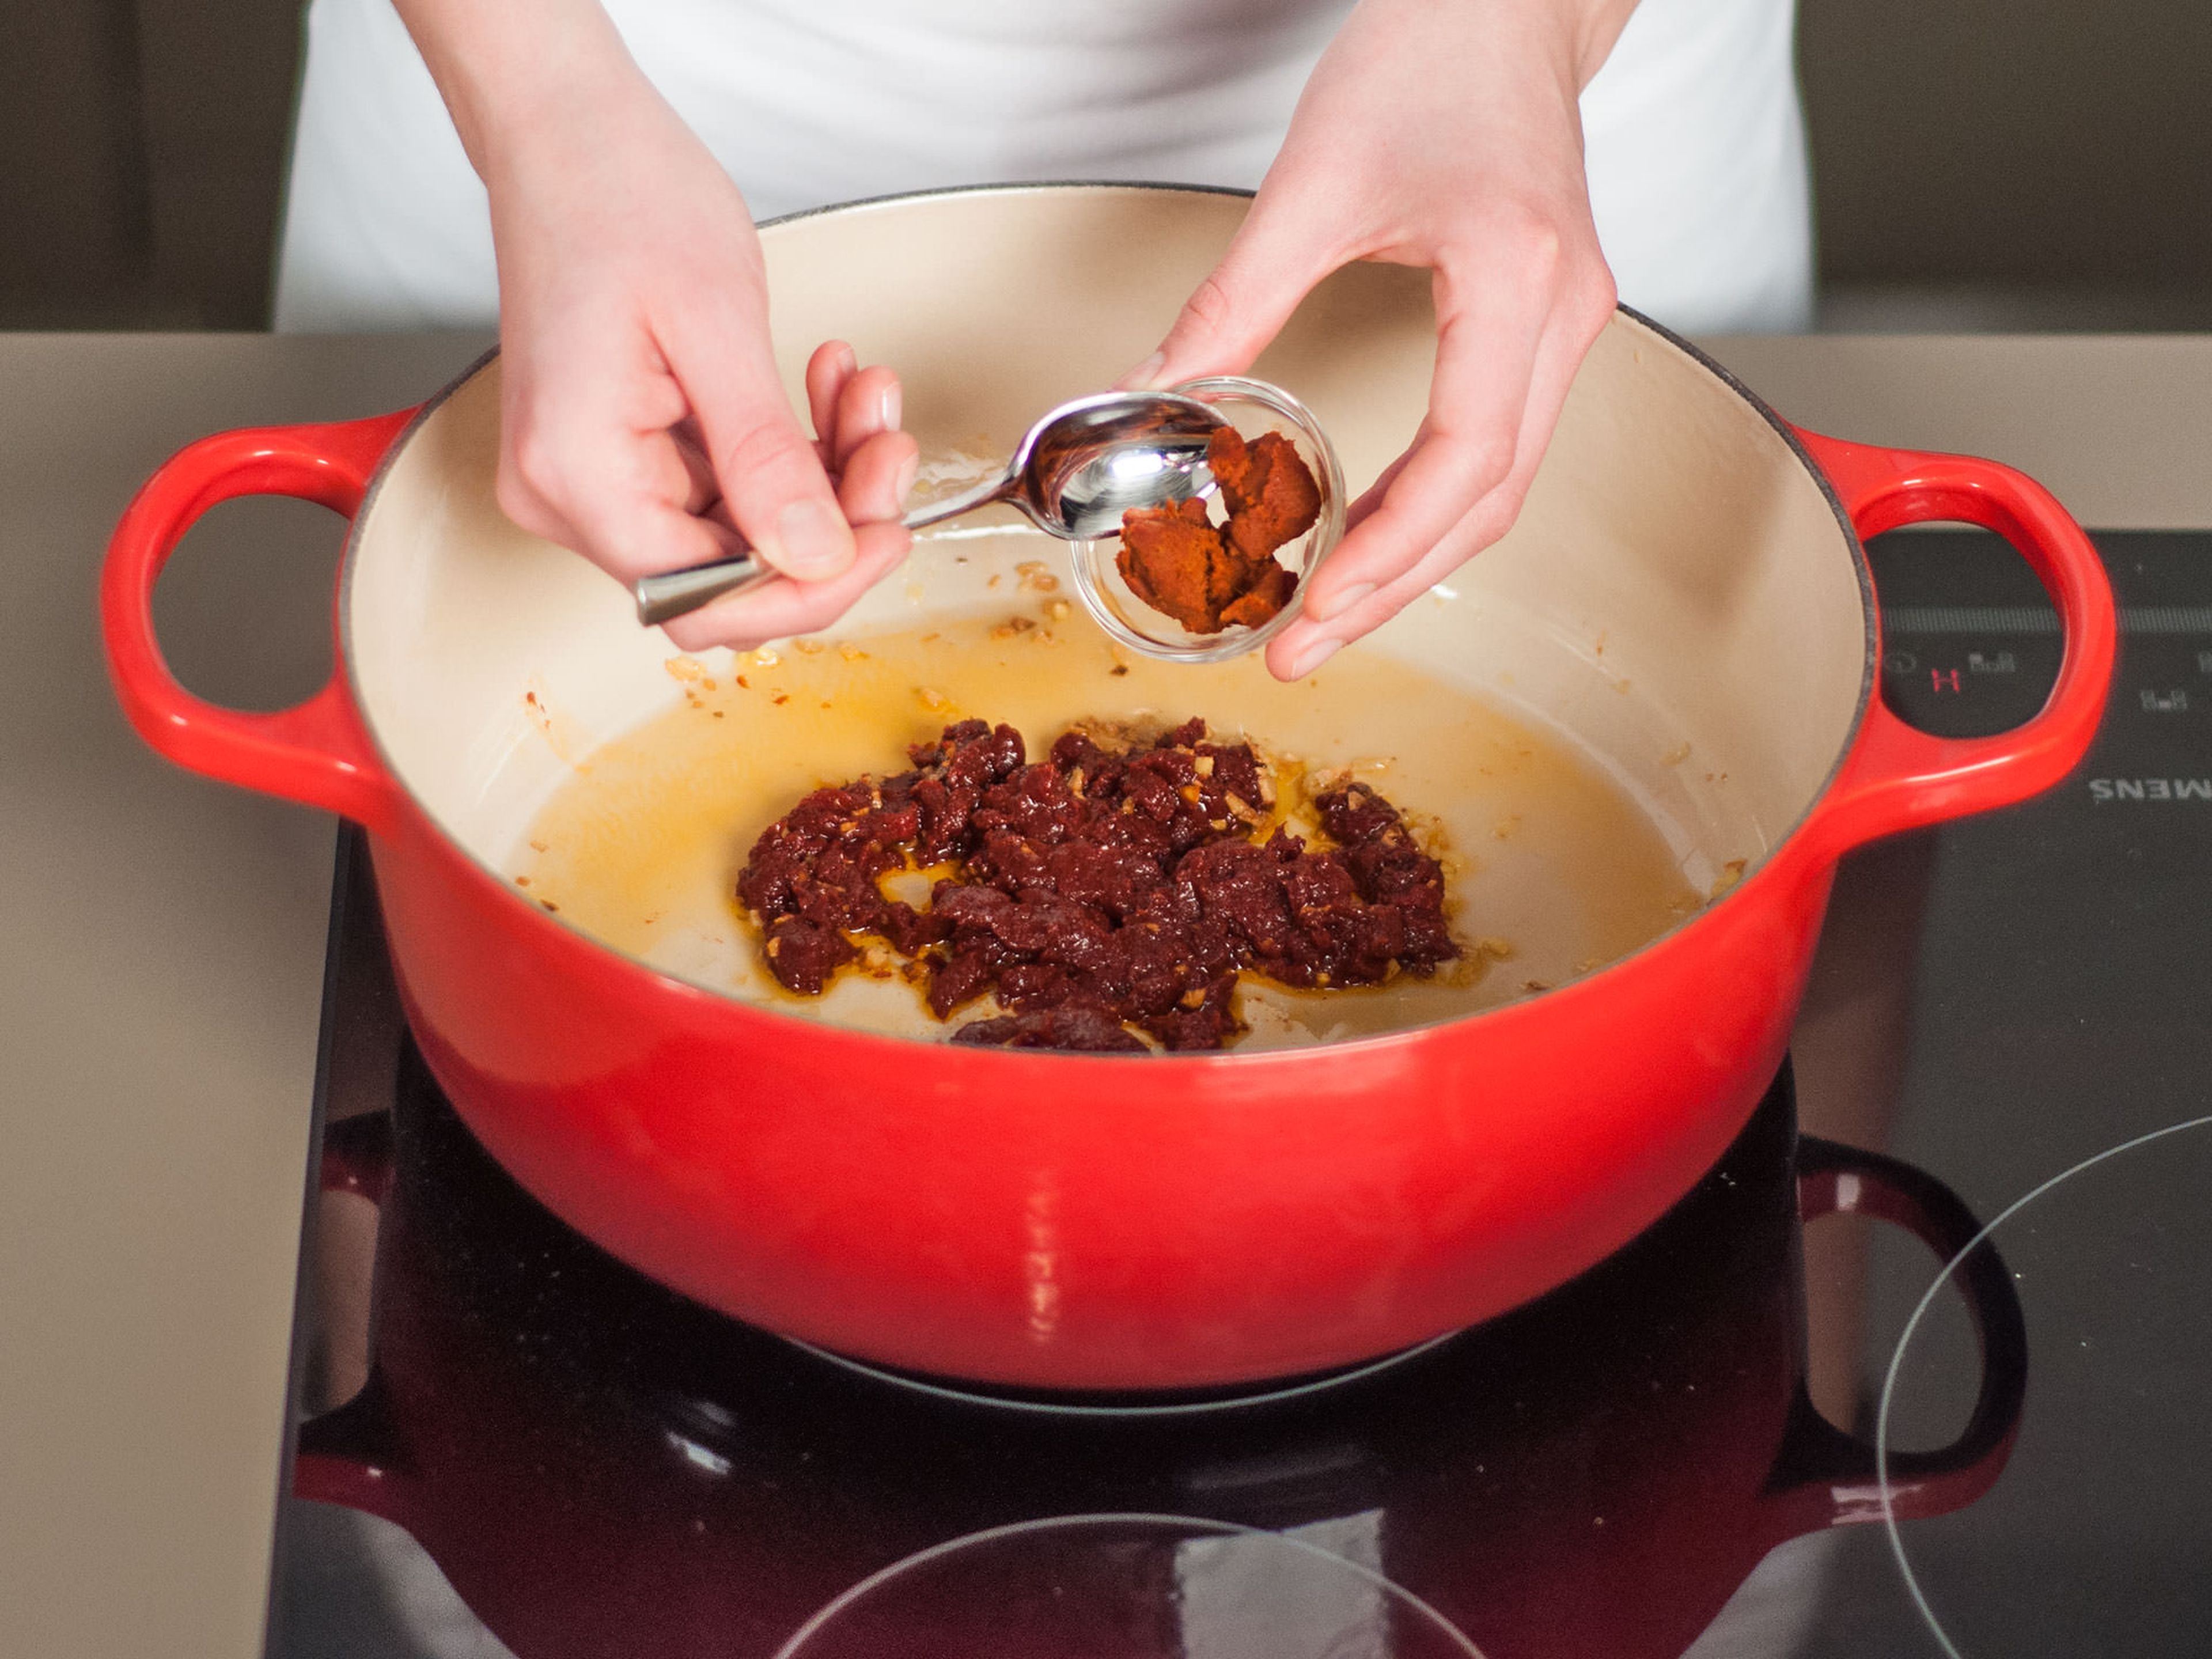 Rote Currypaste hinzugeben und leicht anbraten. Gelegentlich umrühren, um anbrennen zu vermeiden.